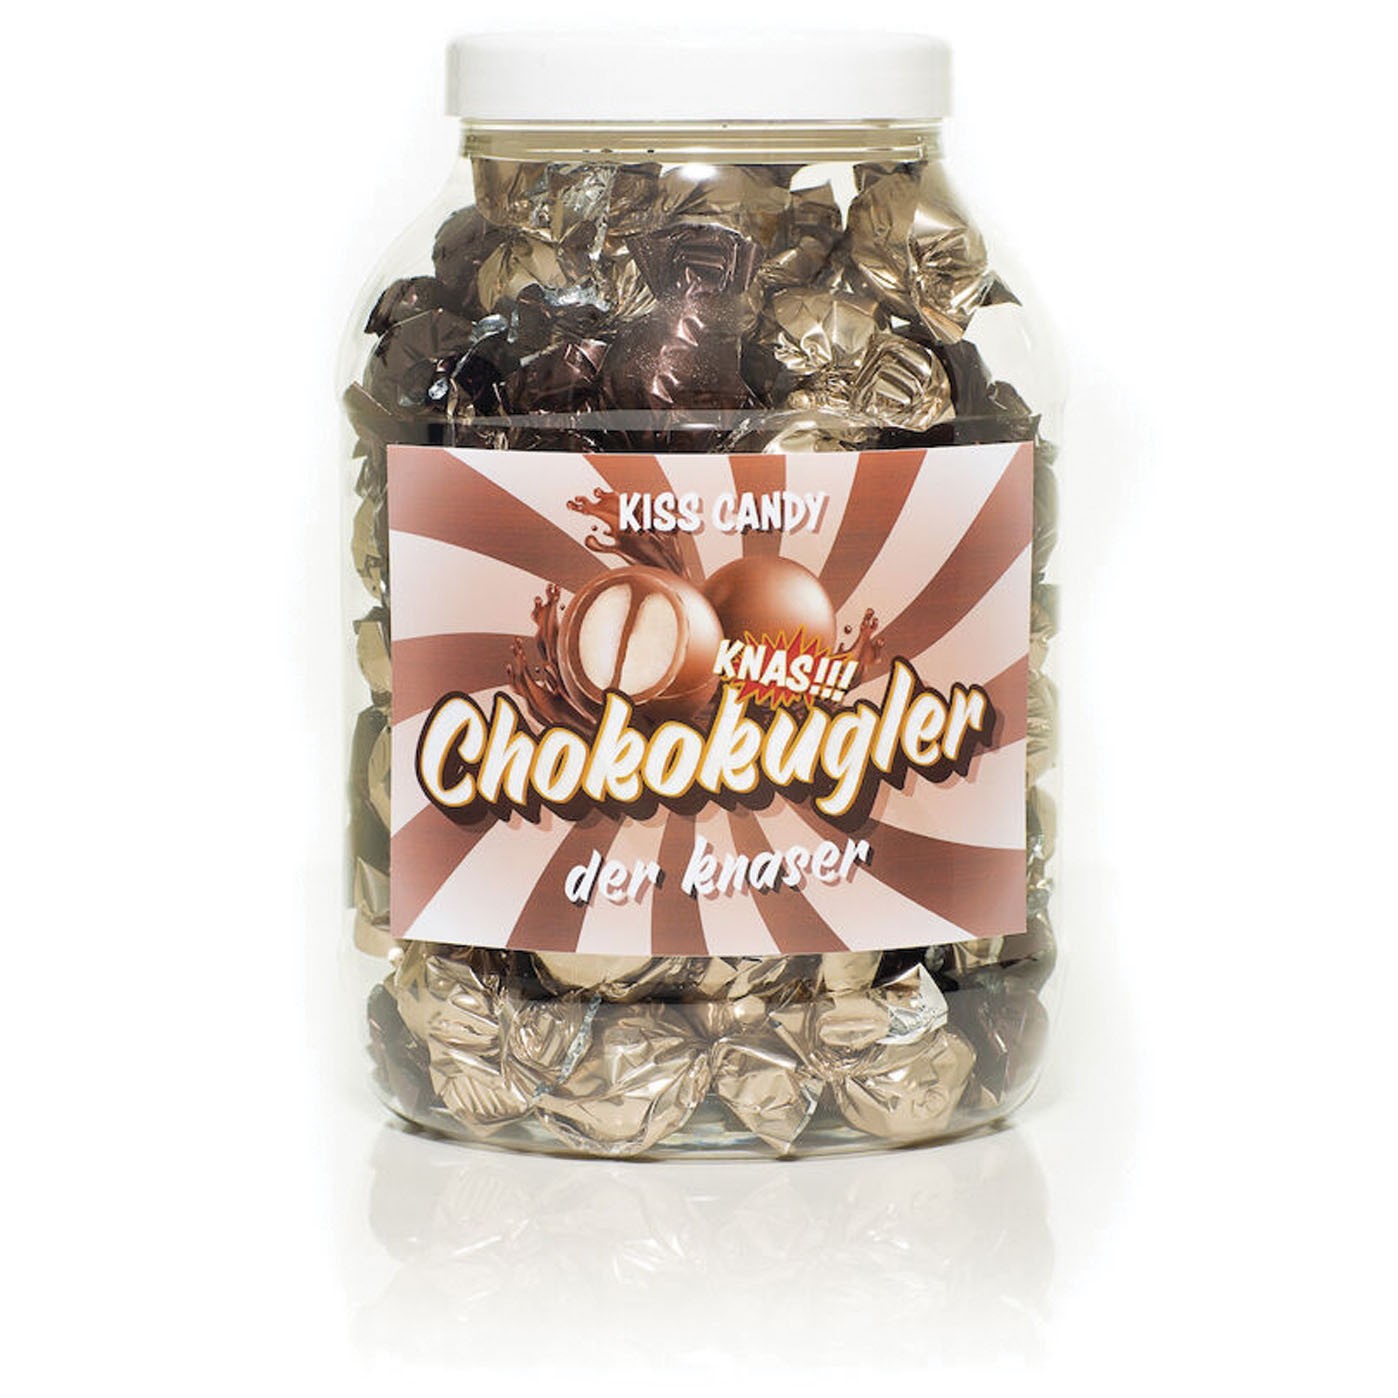 Chokokugler med vaniljecreme 1100 g